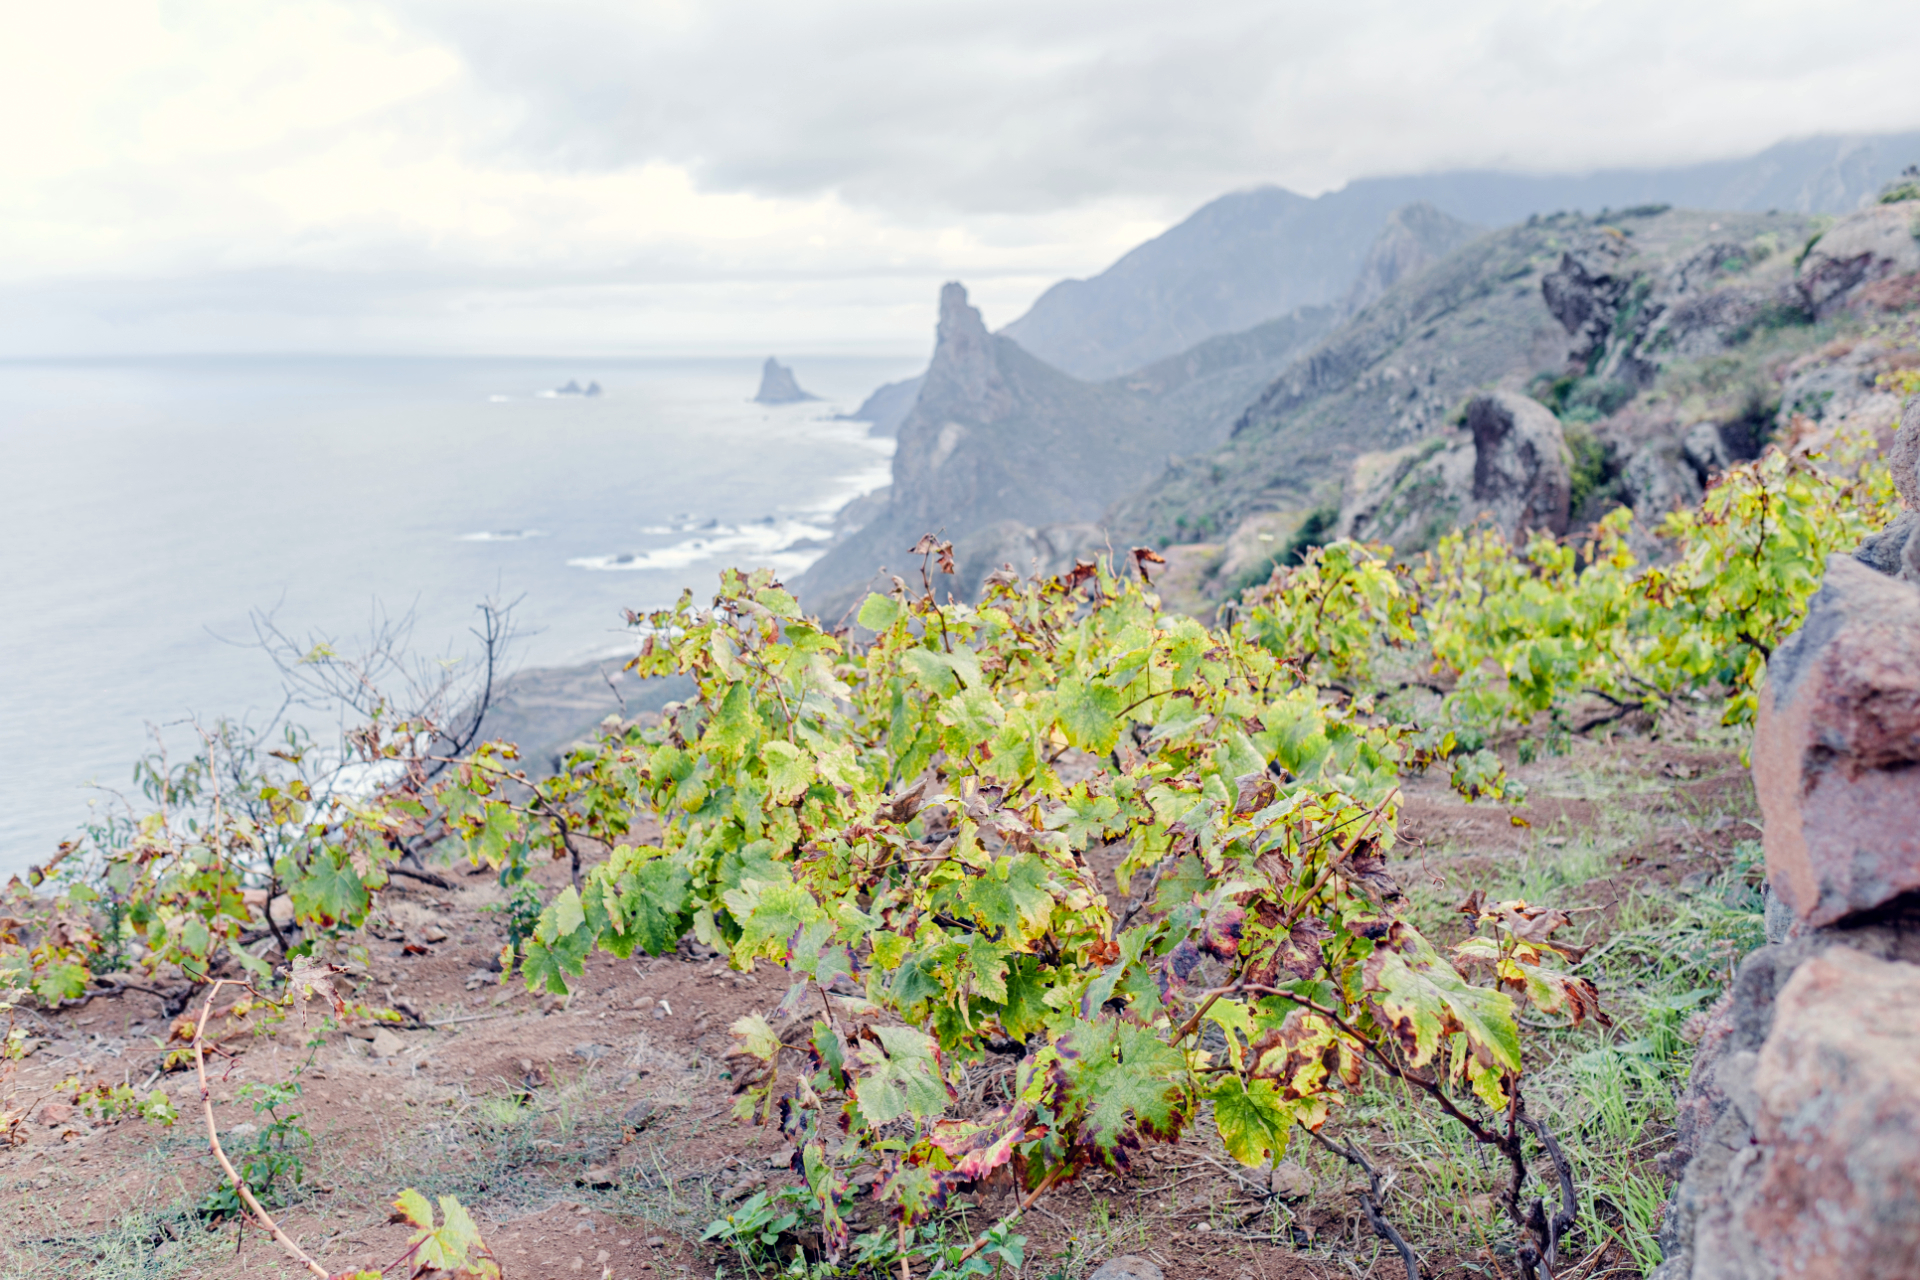 Éxito vinícola en Canarias: más de un millón de botellas de Canary Wine comercializadas en un año triunfal